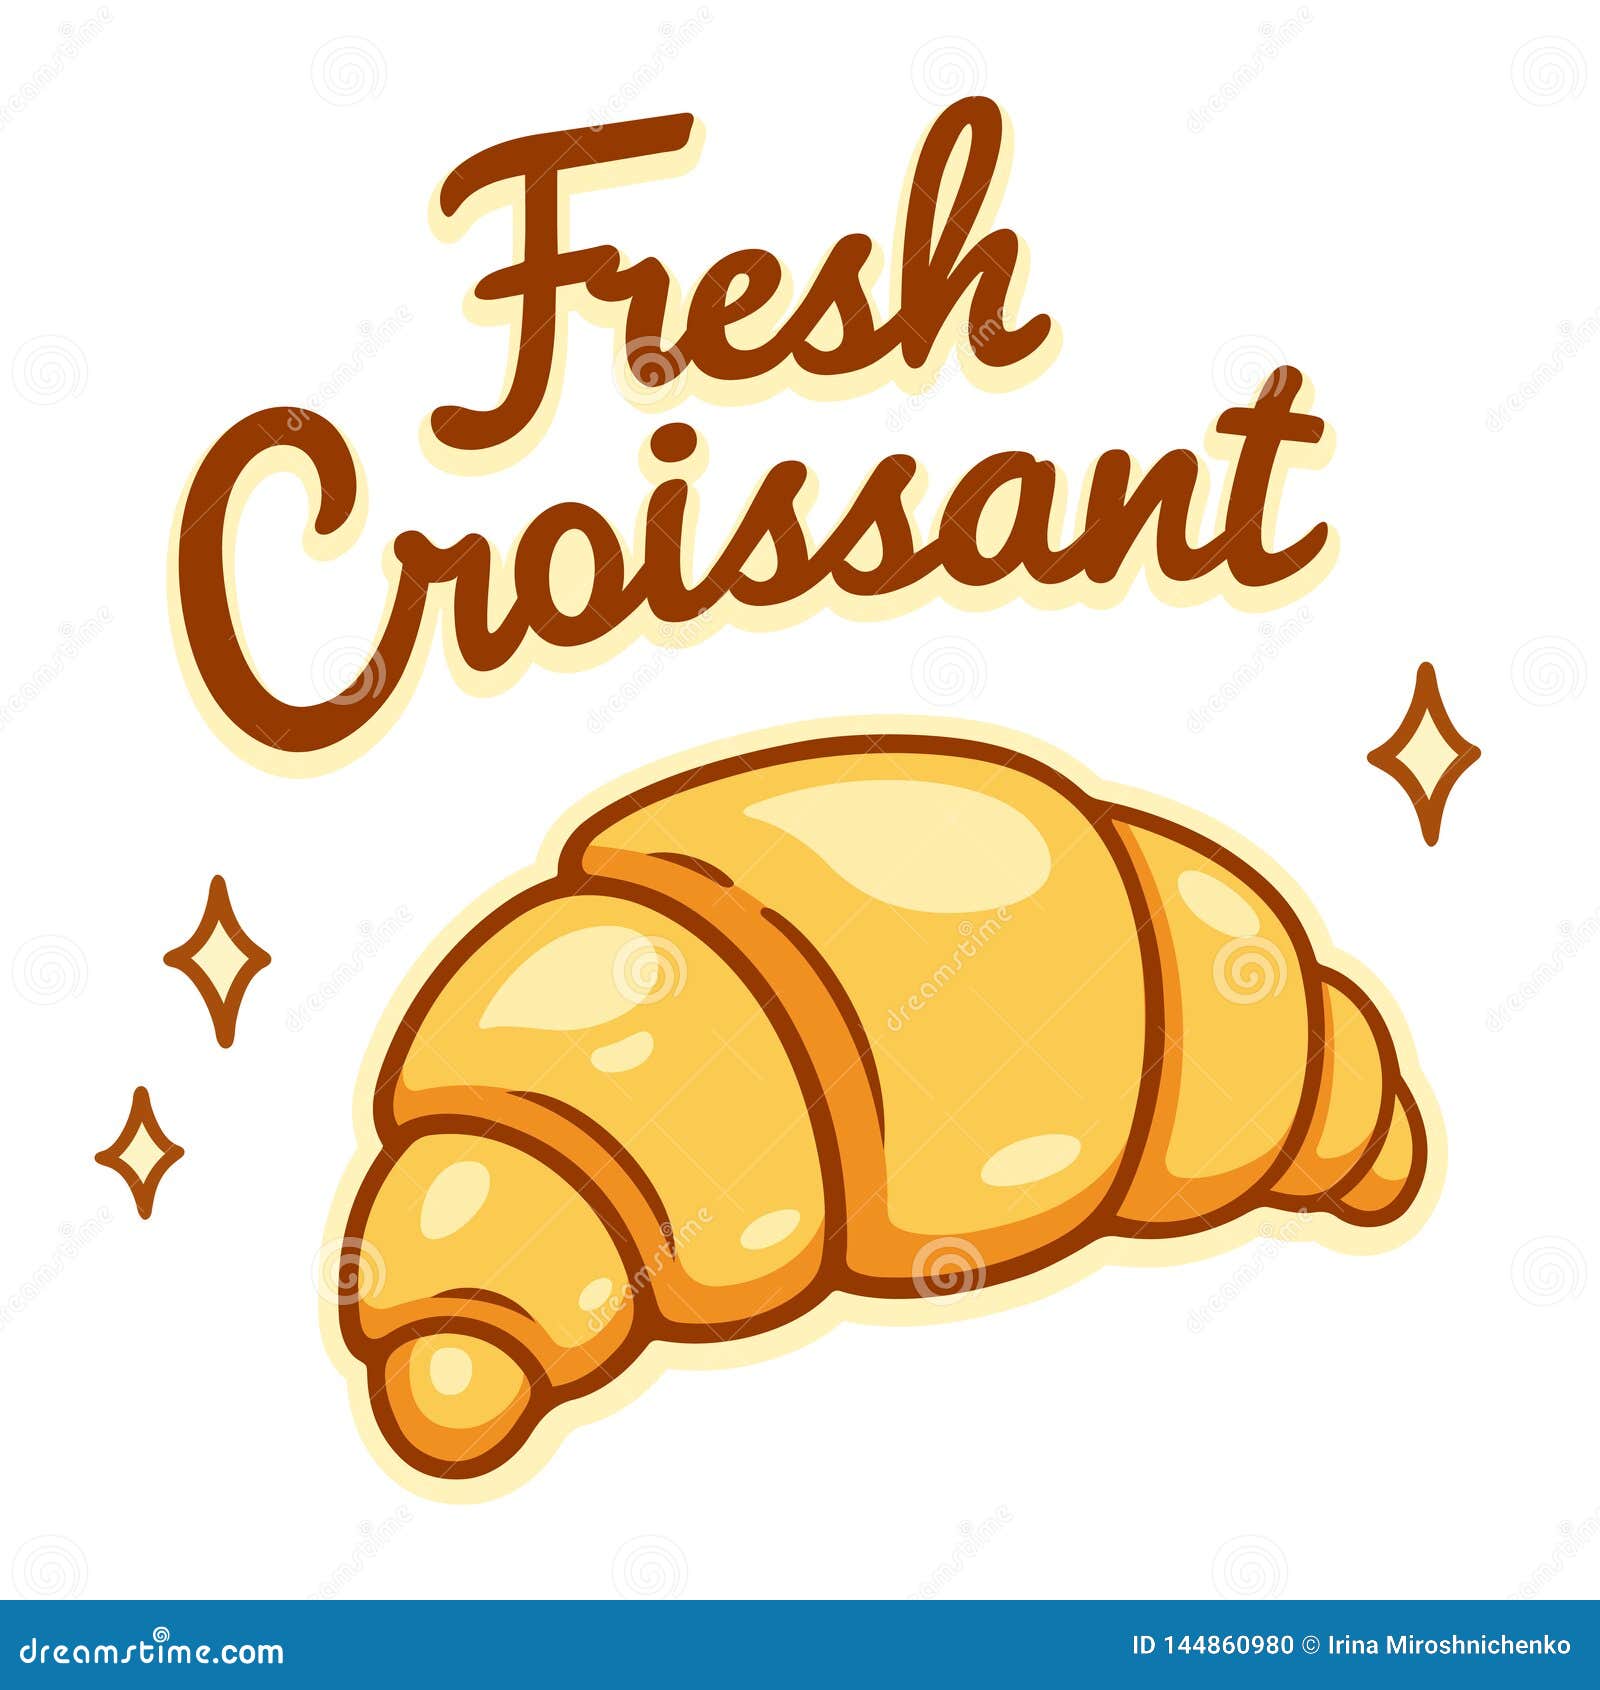 clipart caf�� croissant - photo #22